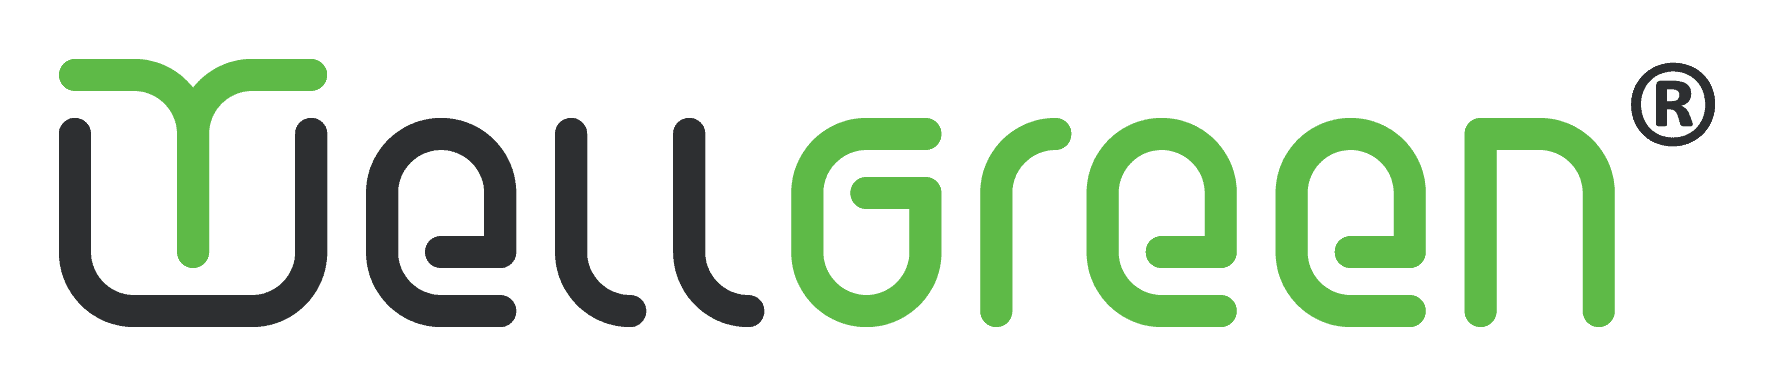 Weelgreen Logo Outer